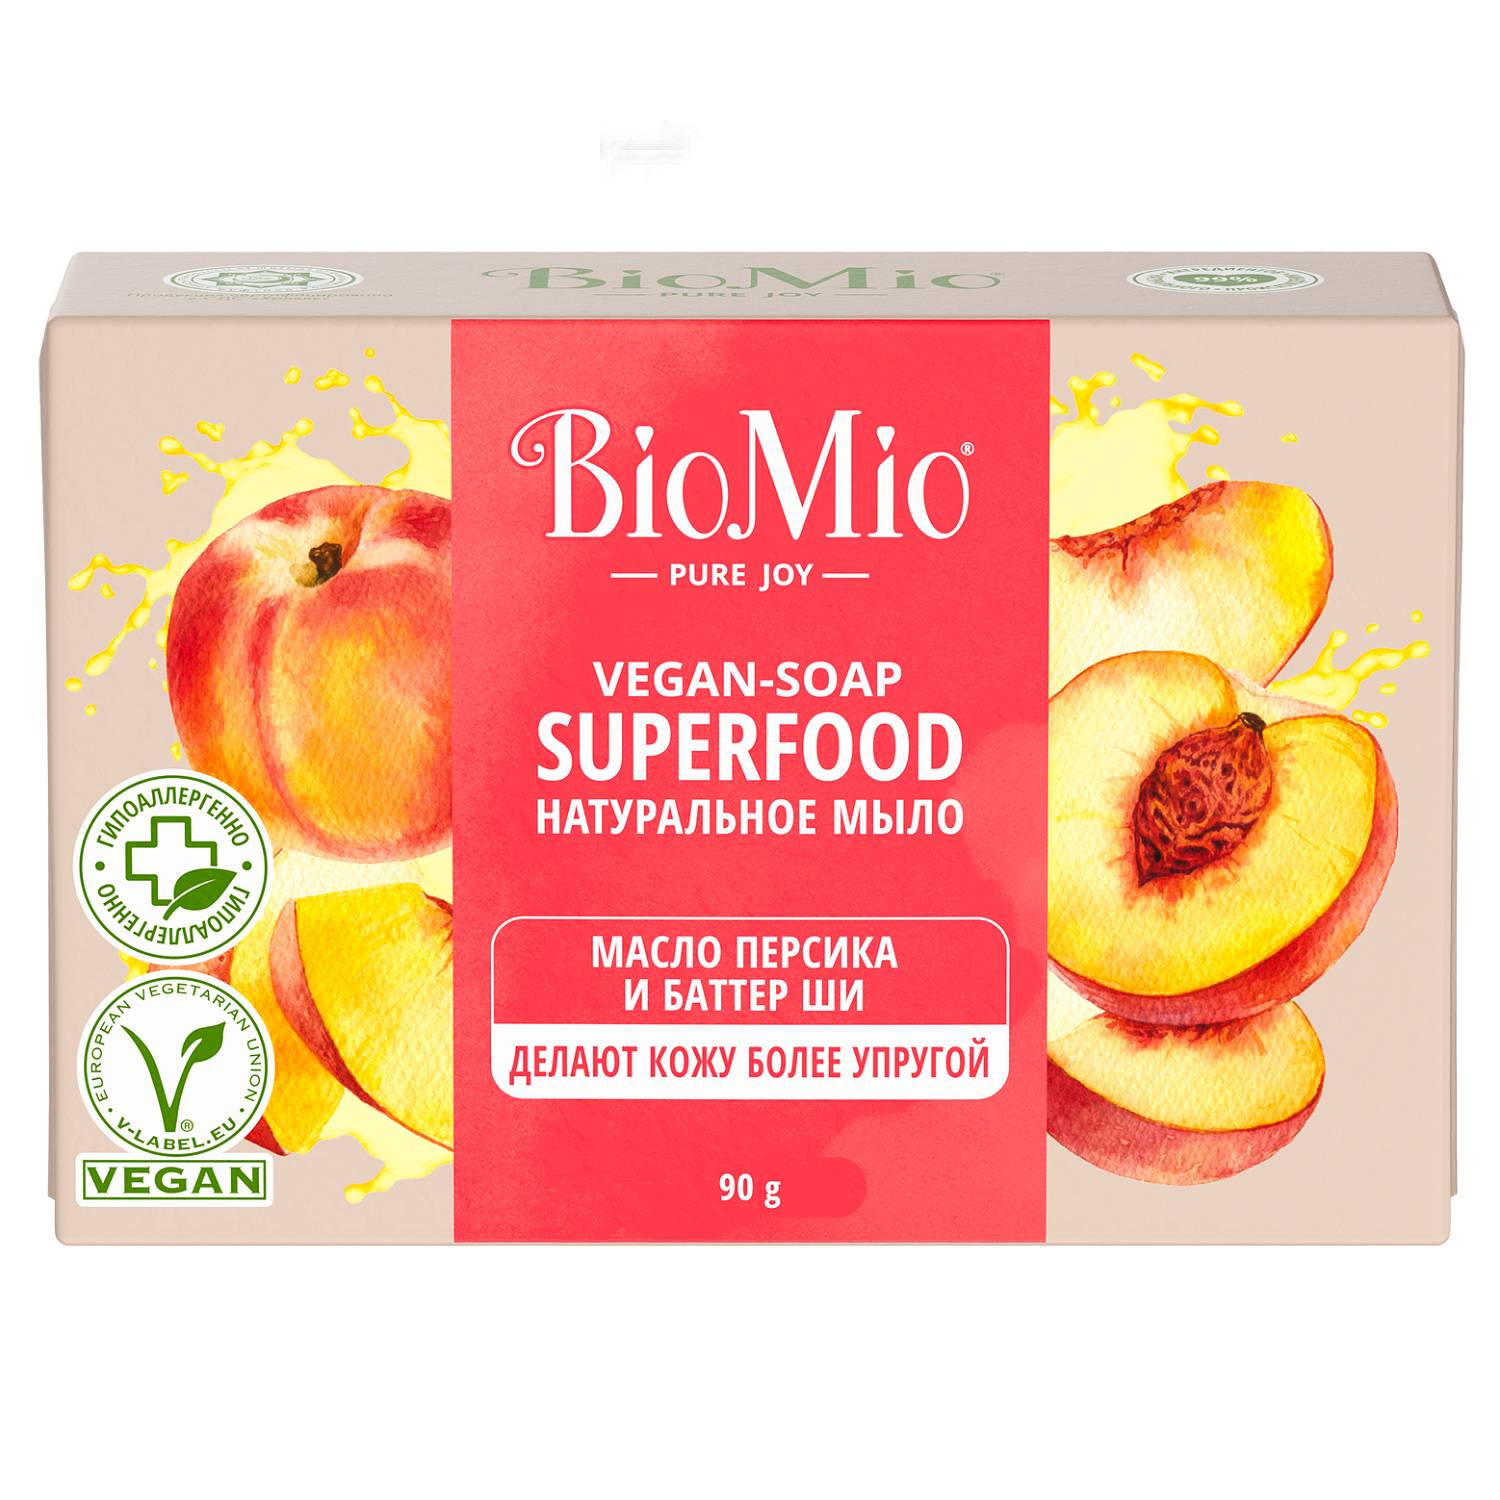 BioMio Натуральное мыло Персик и ши Vegan Soap Superfood, 90 г (BioMio, Мыло) веганское мыло для бритья без запаха 80 г bambow bambaw